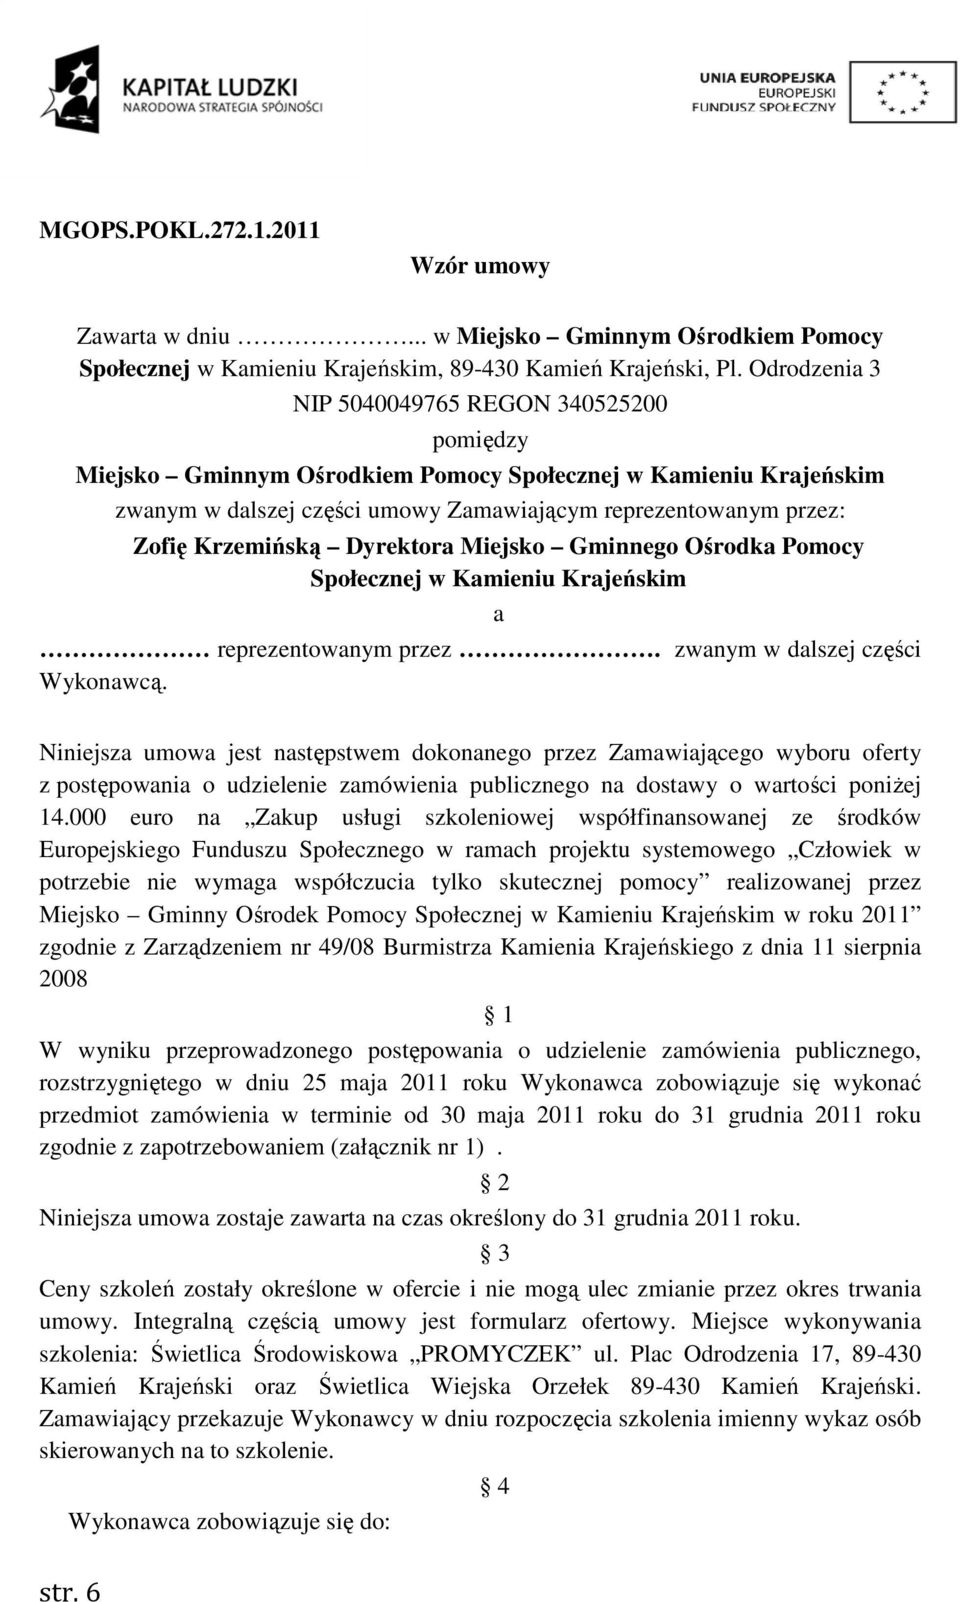 Pomocy Społecznej w Kamieniu Krajeńskim a reprezentowanym przez. zwanym w dalszej części Wykonawcą.